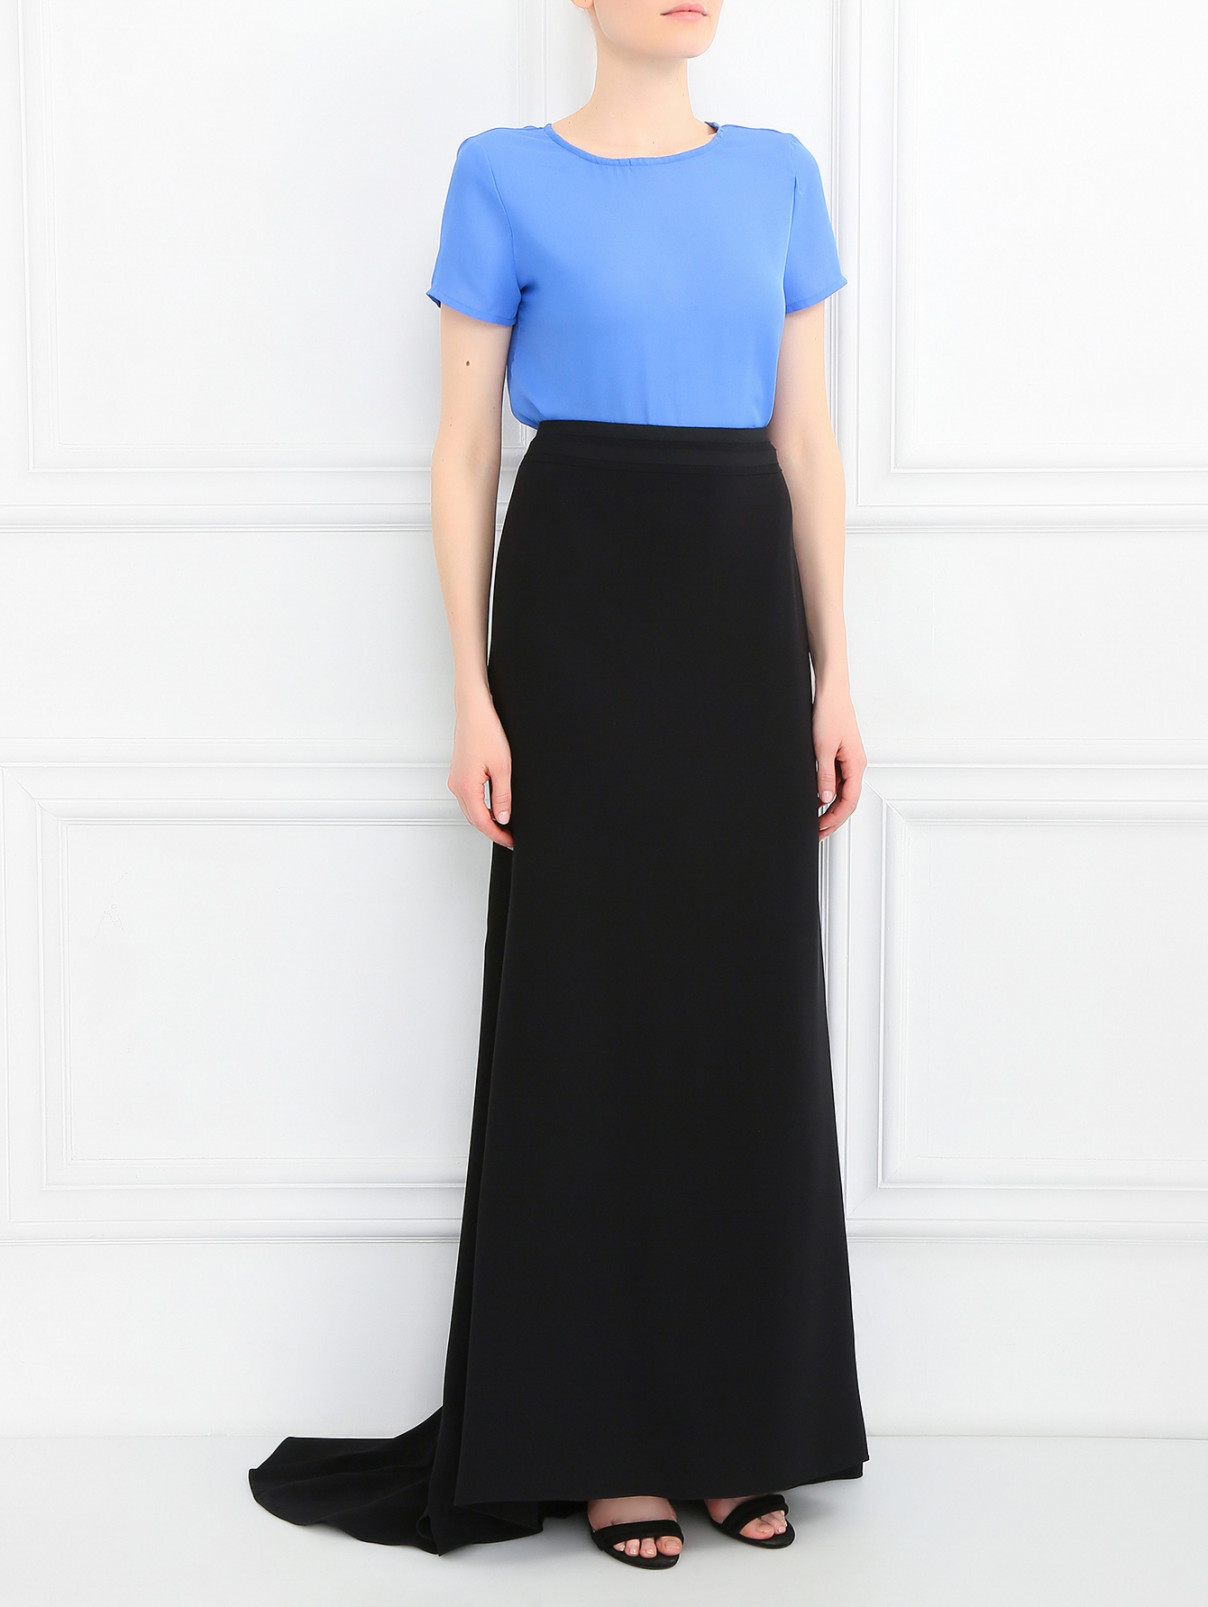 Юбка-макси из шелка со шлейфом Carolina Herrera  –  Модель Общий вид  – Цвет:  Черный